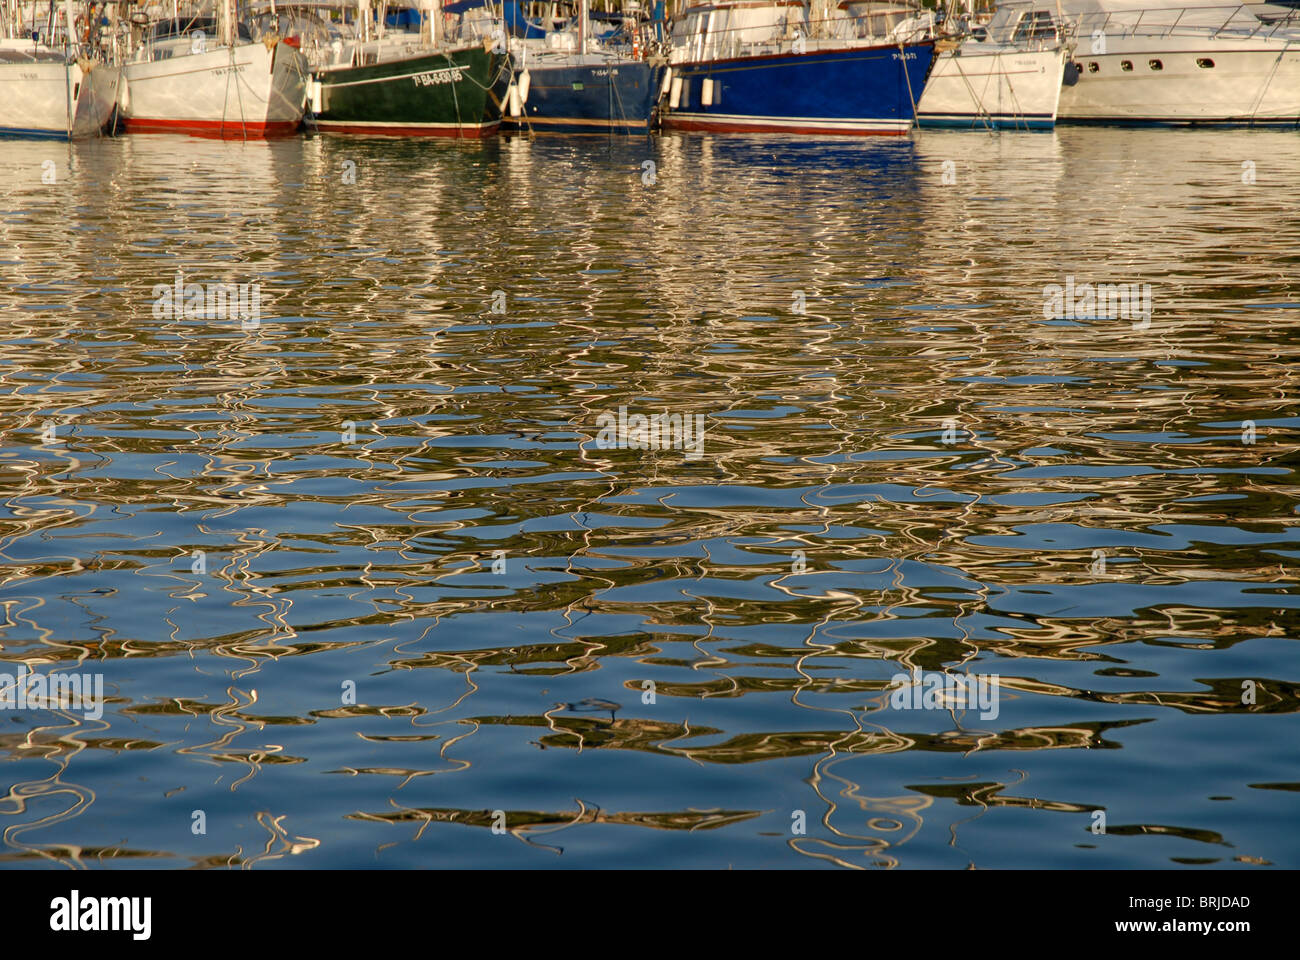 boats and reflections in the sea, Javea / Xabia, Provincia de Alicante, Comunidad Valencia, Spain Stock Photo